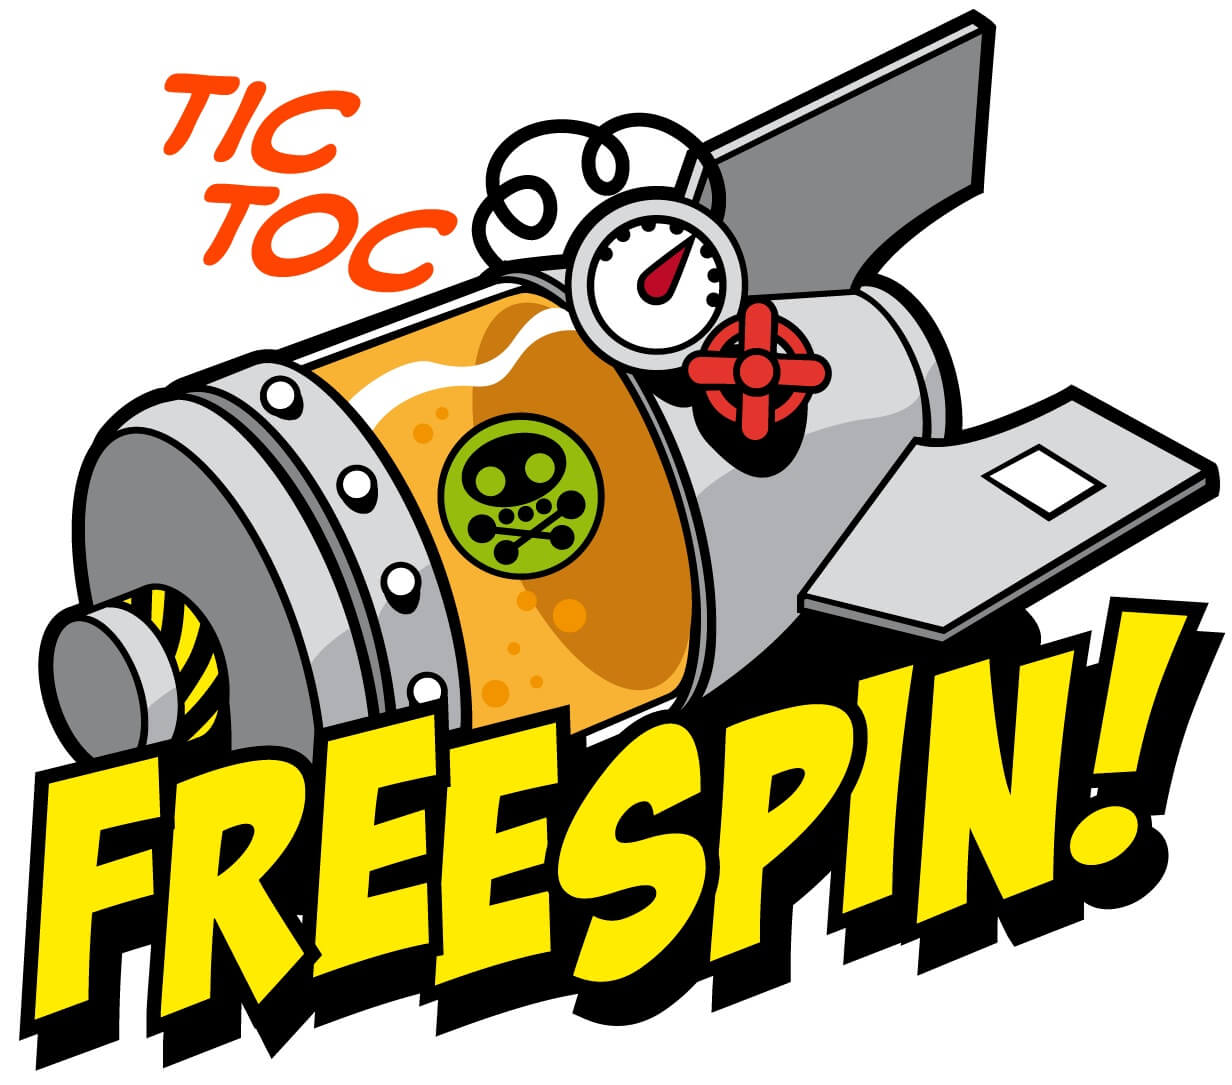 free spins no deposit bonus codes